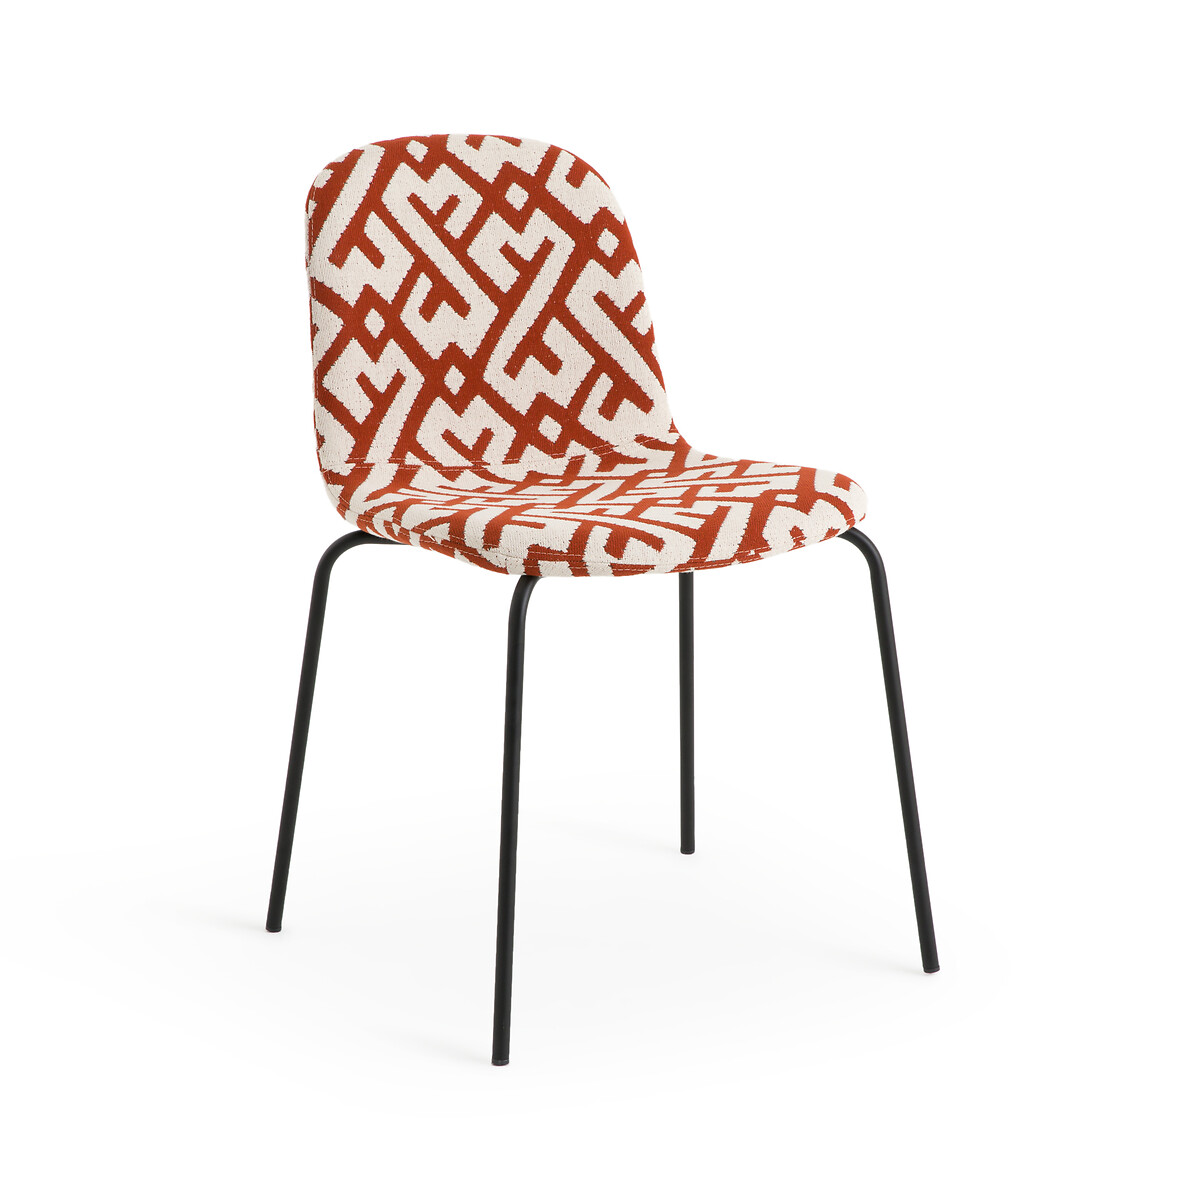 Стул из жаккардовой ткани Tibby единый размер оранжевый стул с фланелевым покрытием tibby единый размер синий